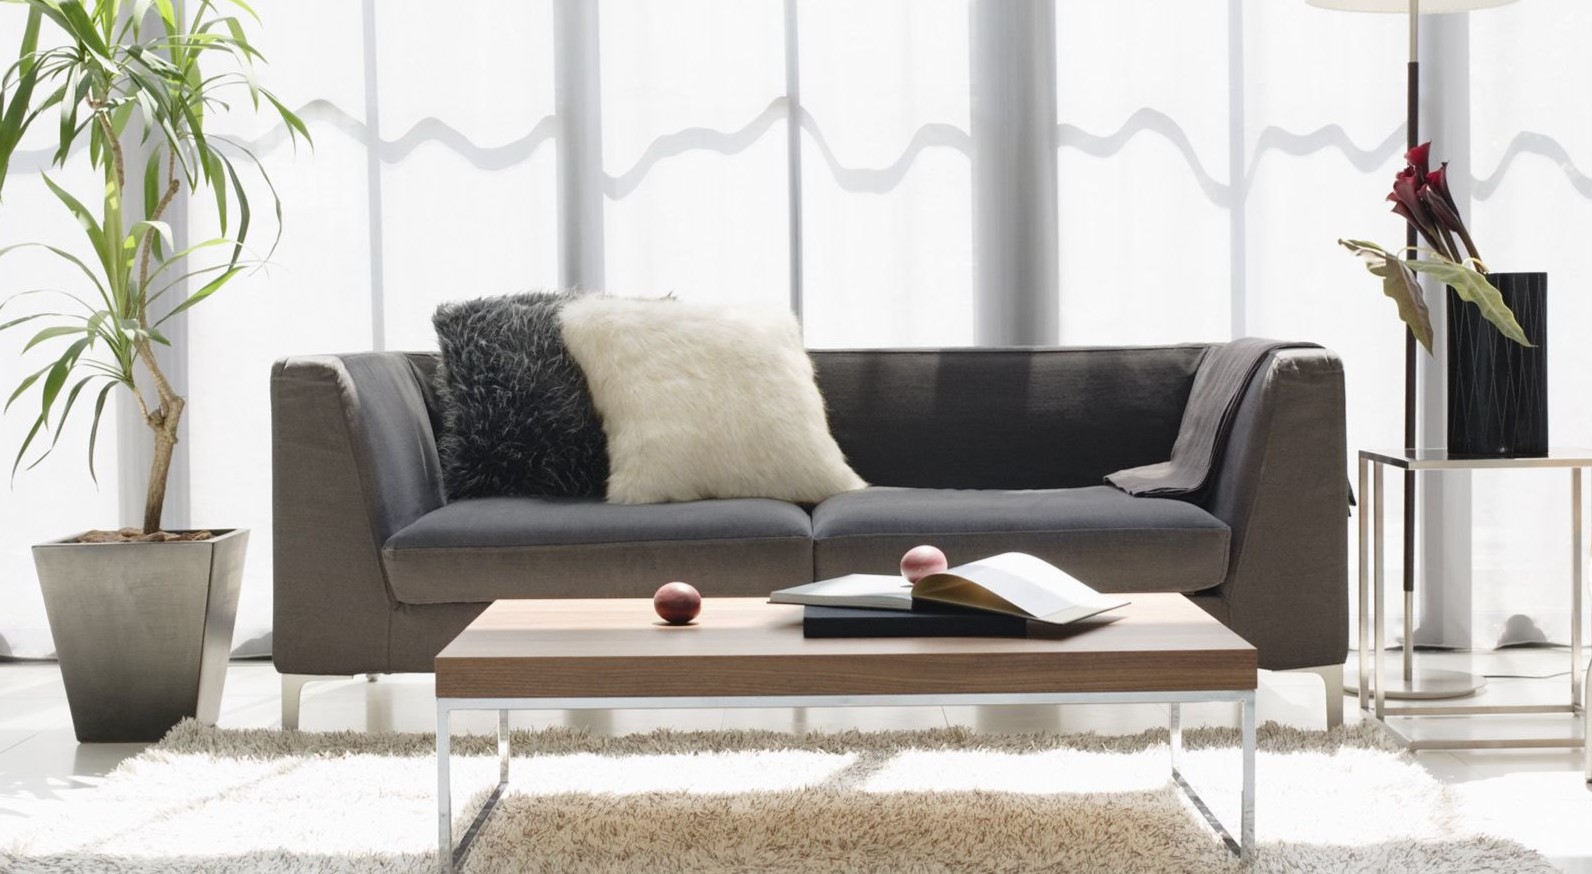 Серый диван идеально подойдет для интерьера минимализм или хай-тек